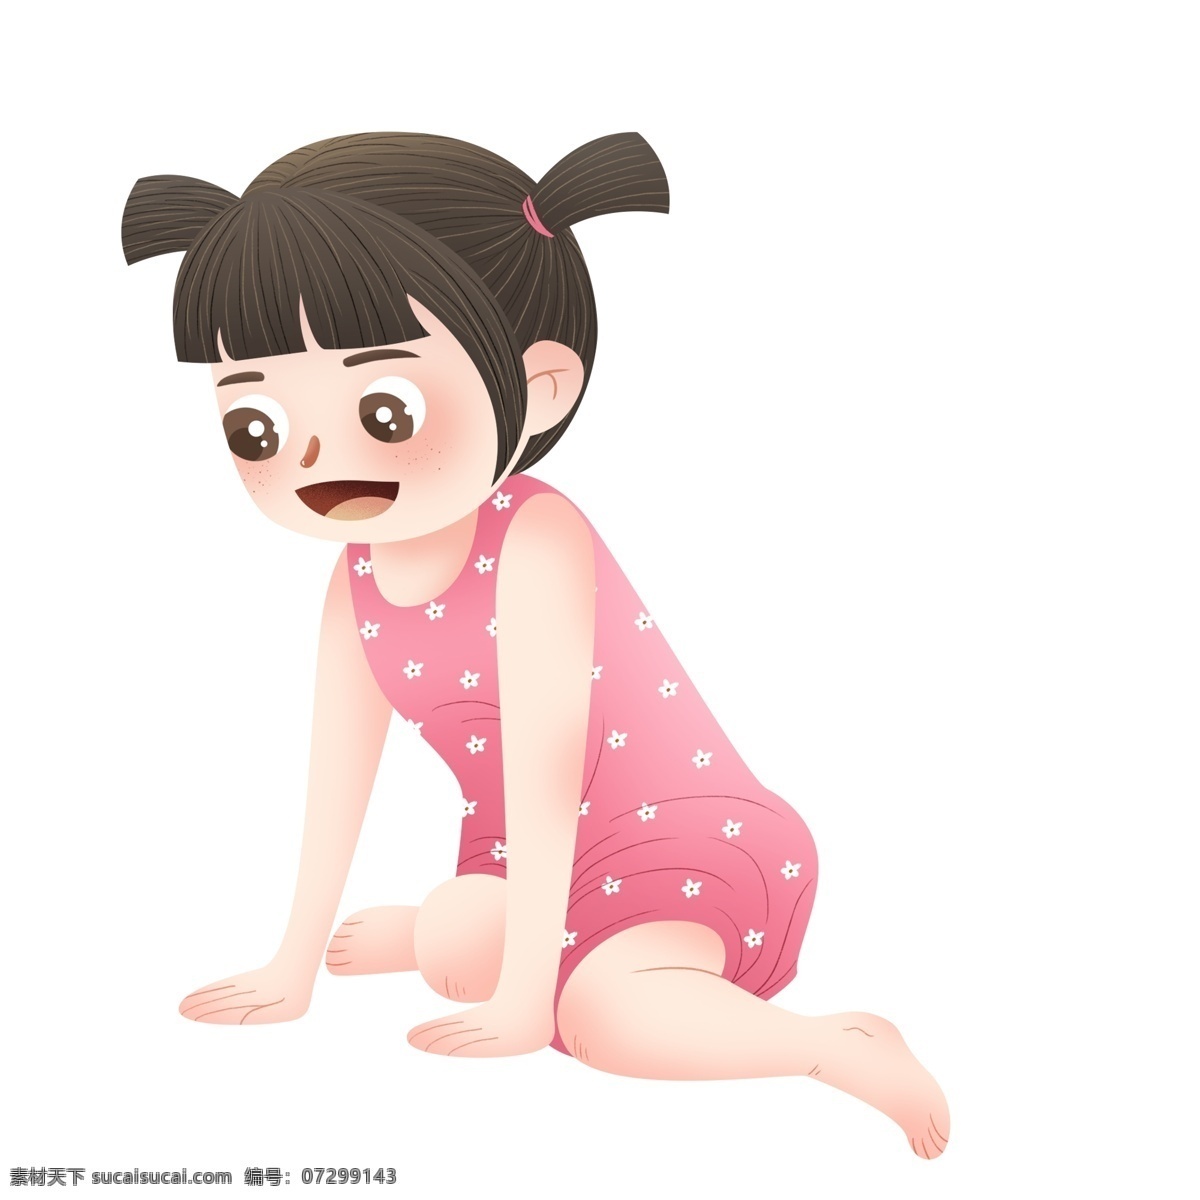 卡通 可爱 跪 地上 女孩 婴儿 儿童 娃娃 人物 插画